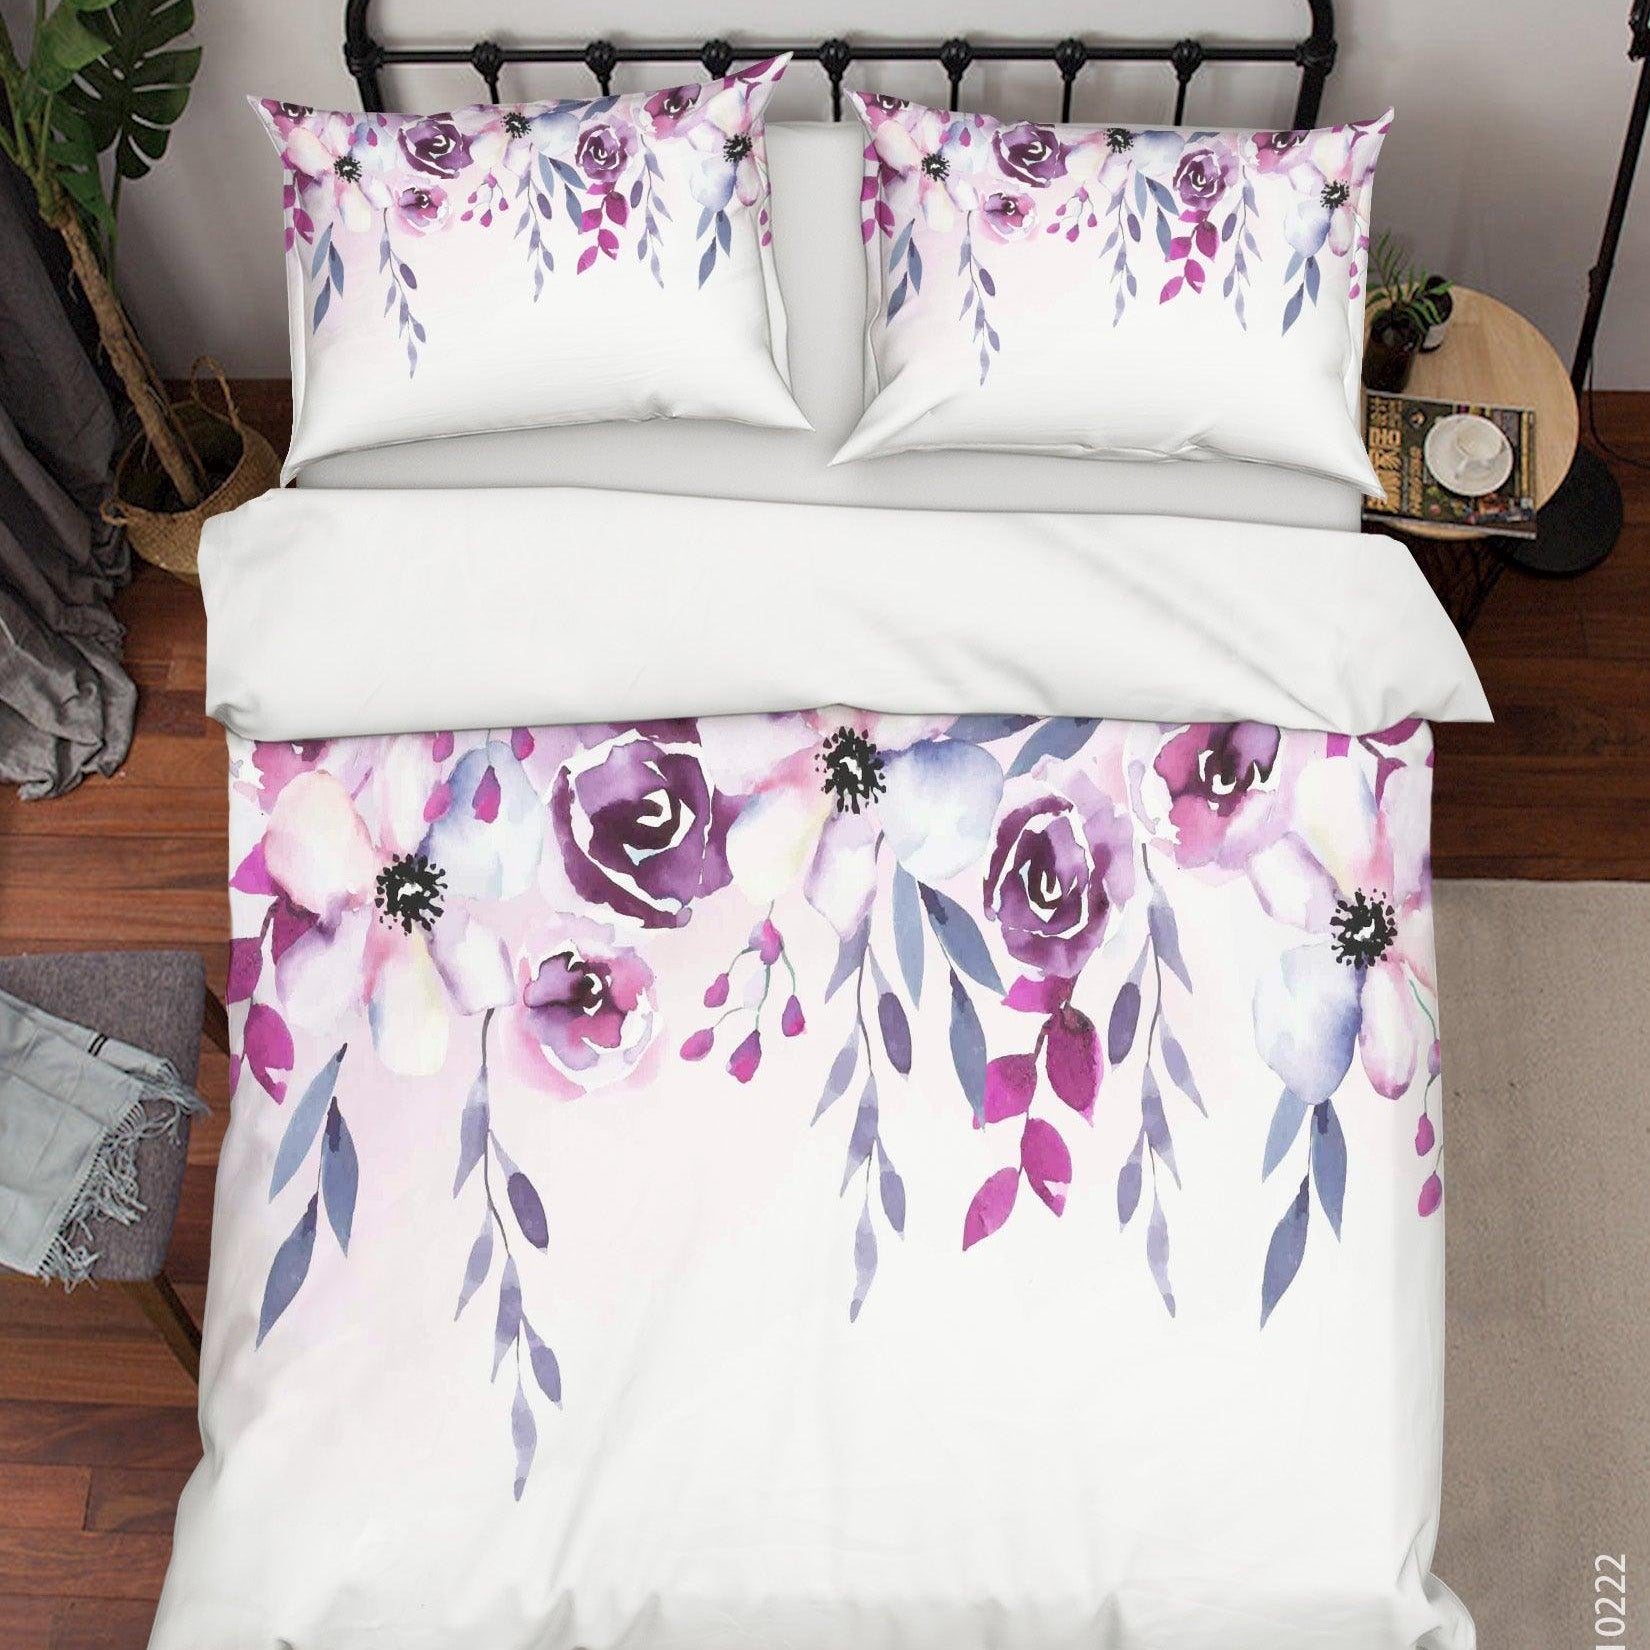 3D Watercolor Pink Floral Quilt Cover Set Bedding Set Duvet Cover Pillowcases 148- Jess Art Decoration